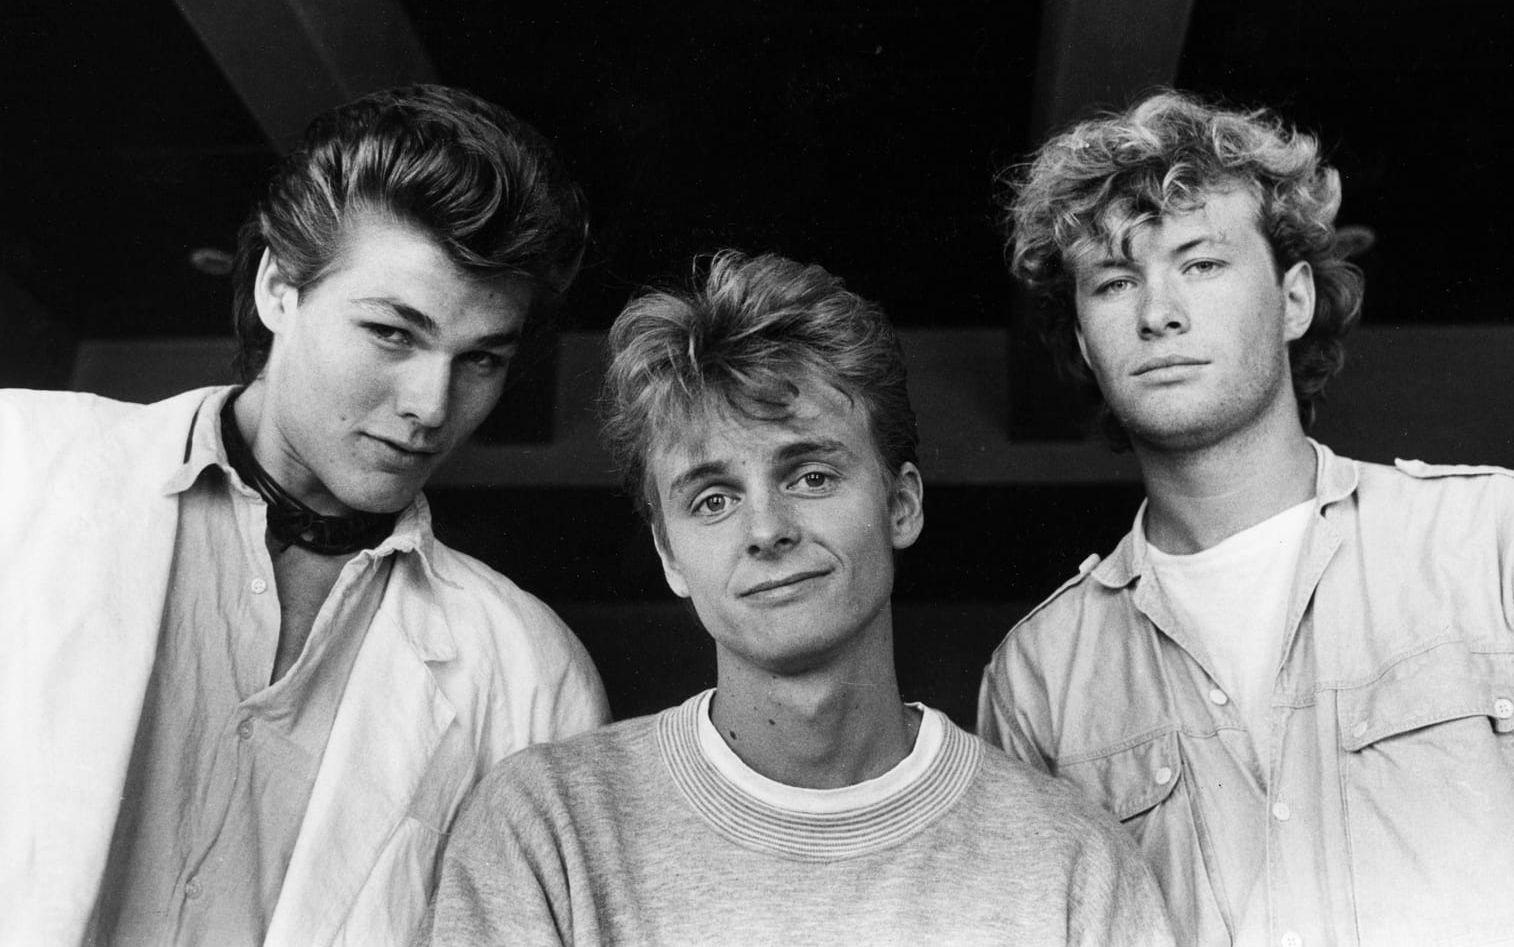 1985 toppade Morten Harket, Pål Waaktaar och Magne Furuholmen i A-ha den amerikanska Billboard Hot 100-listan.